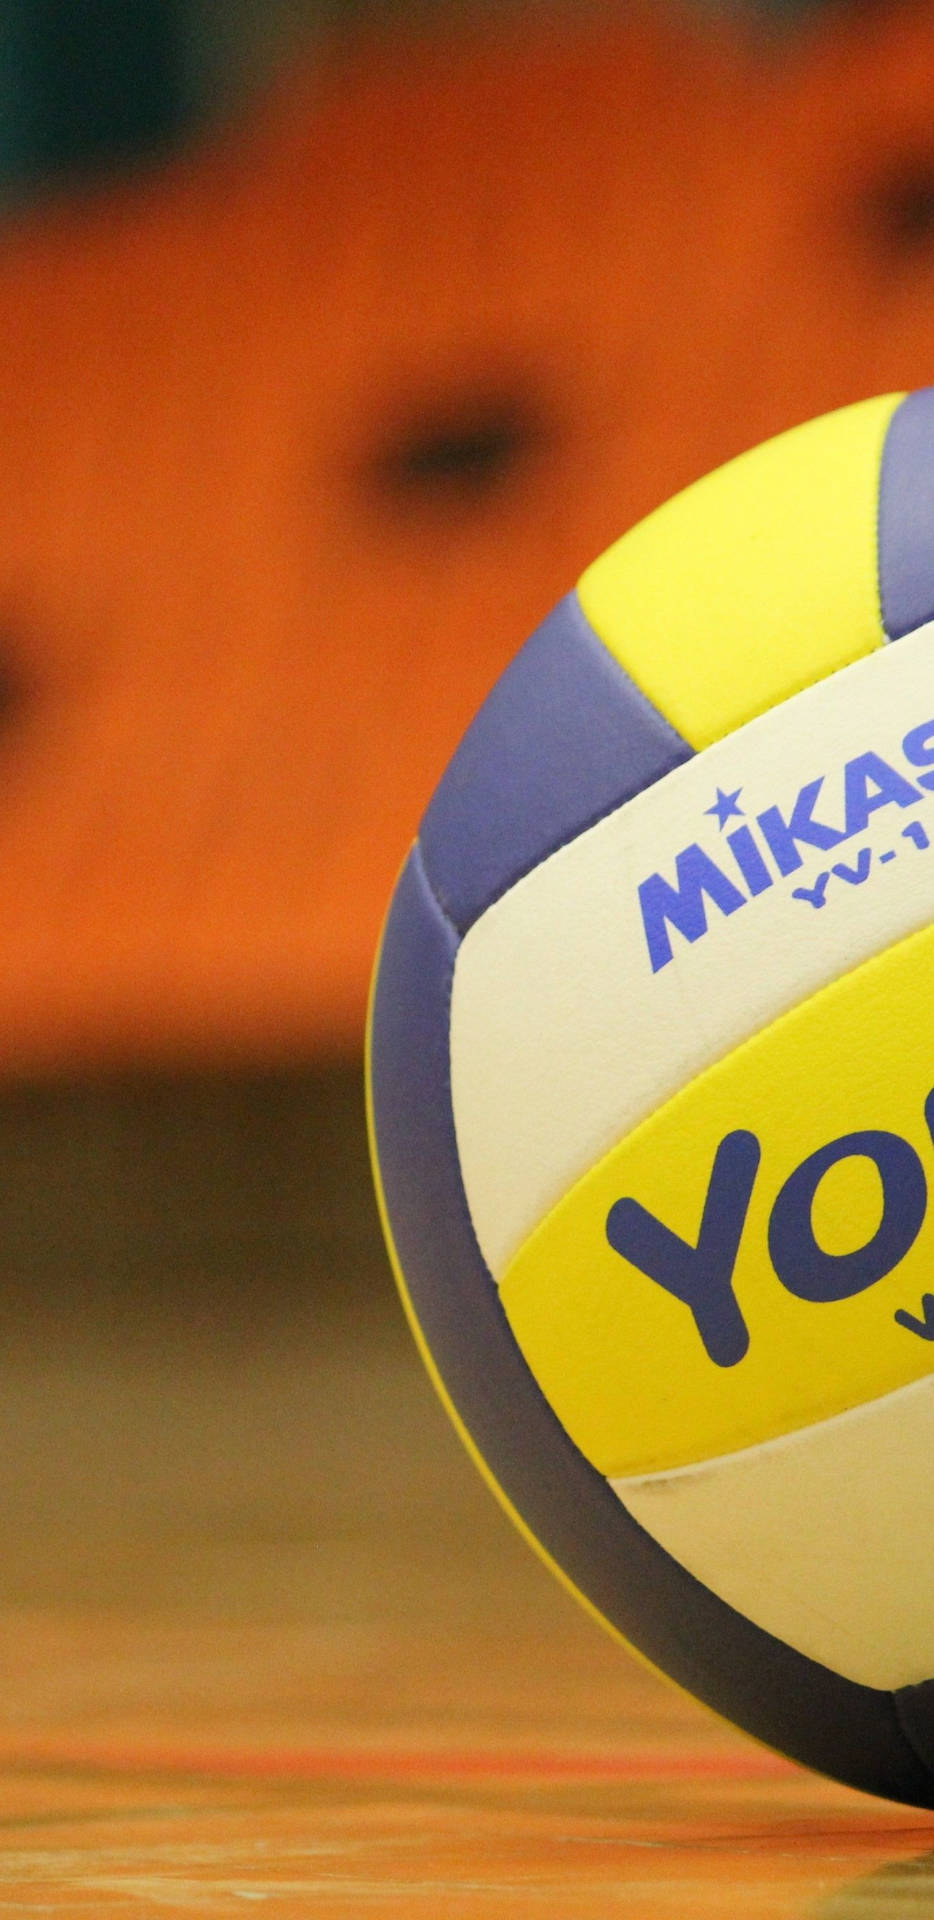 Volleyball Signature Mikasa Ball Wallpaper